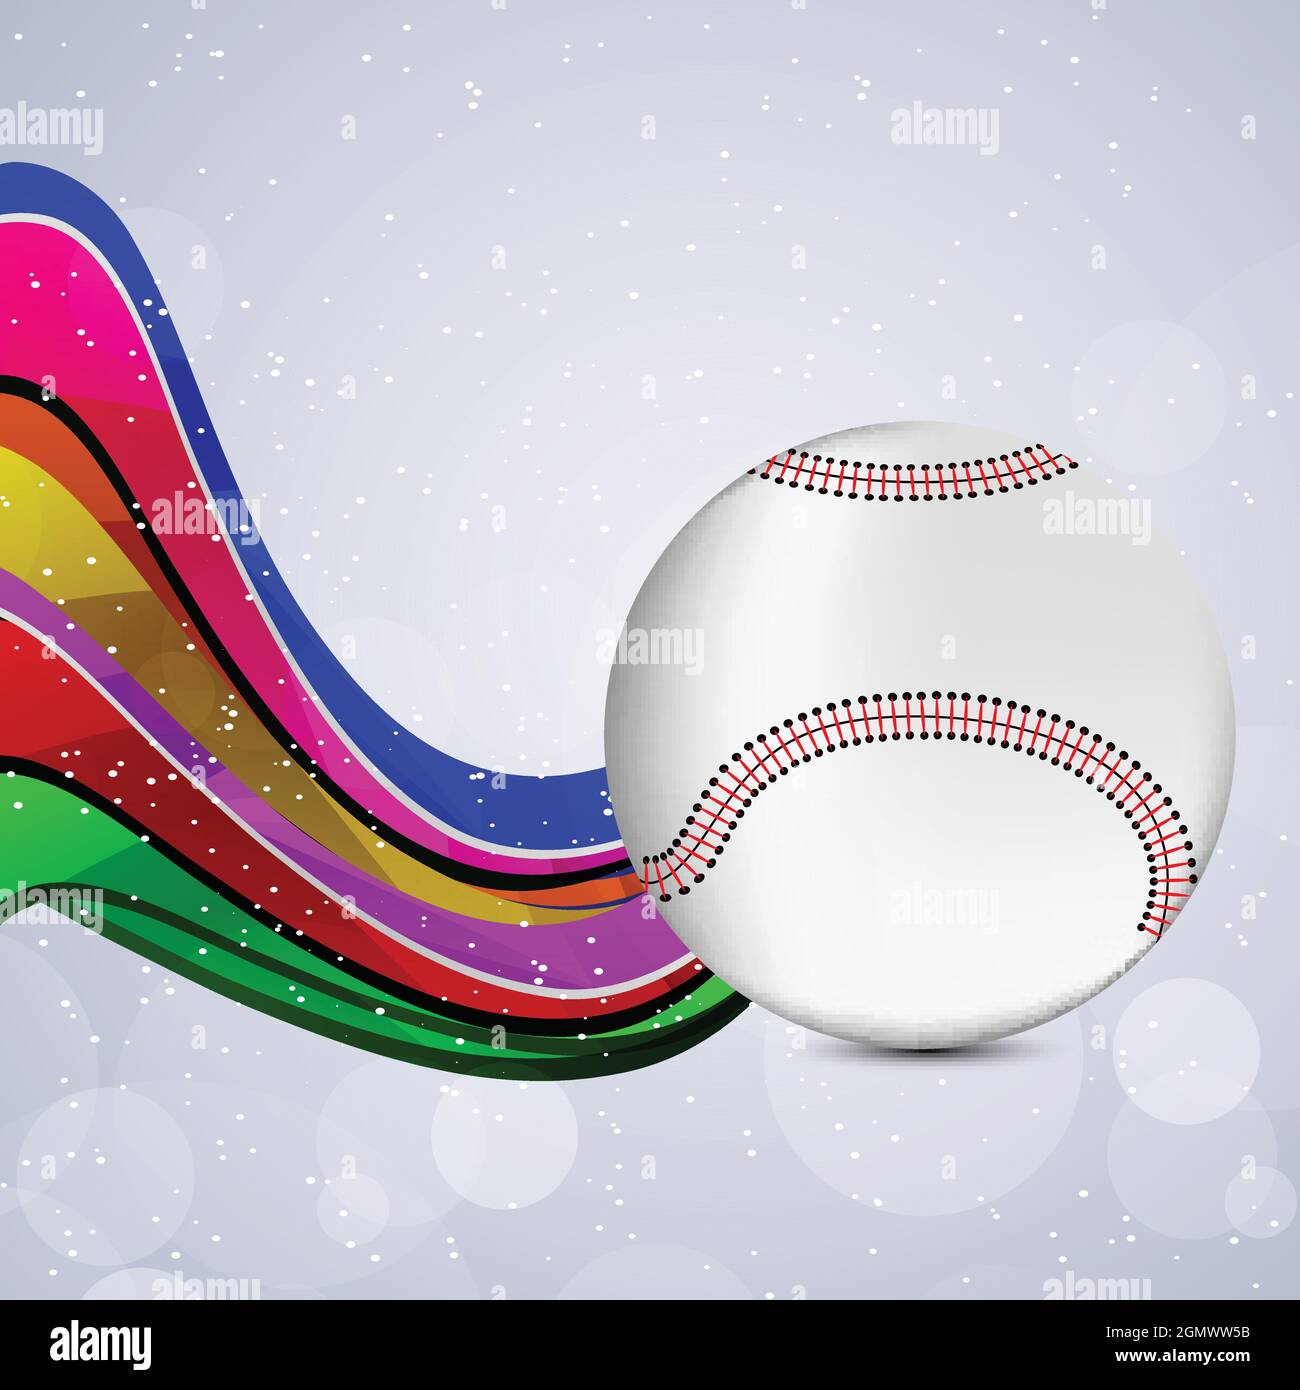 baseball sport background Stock Vector